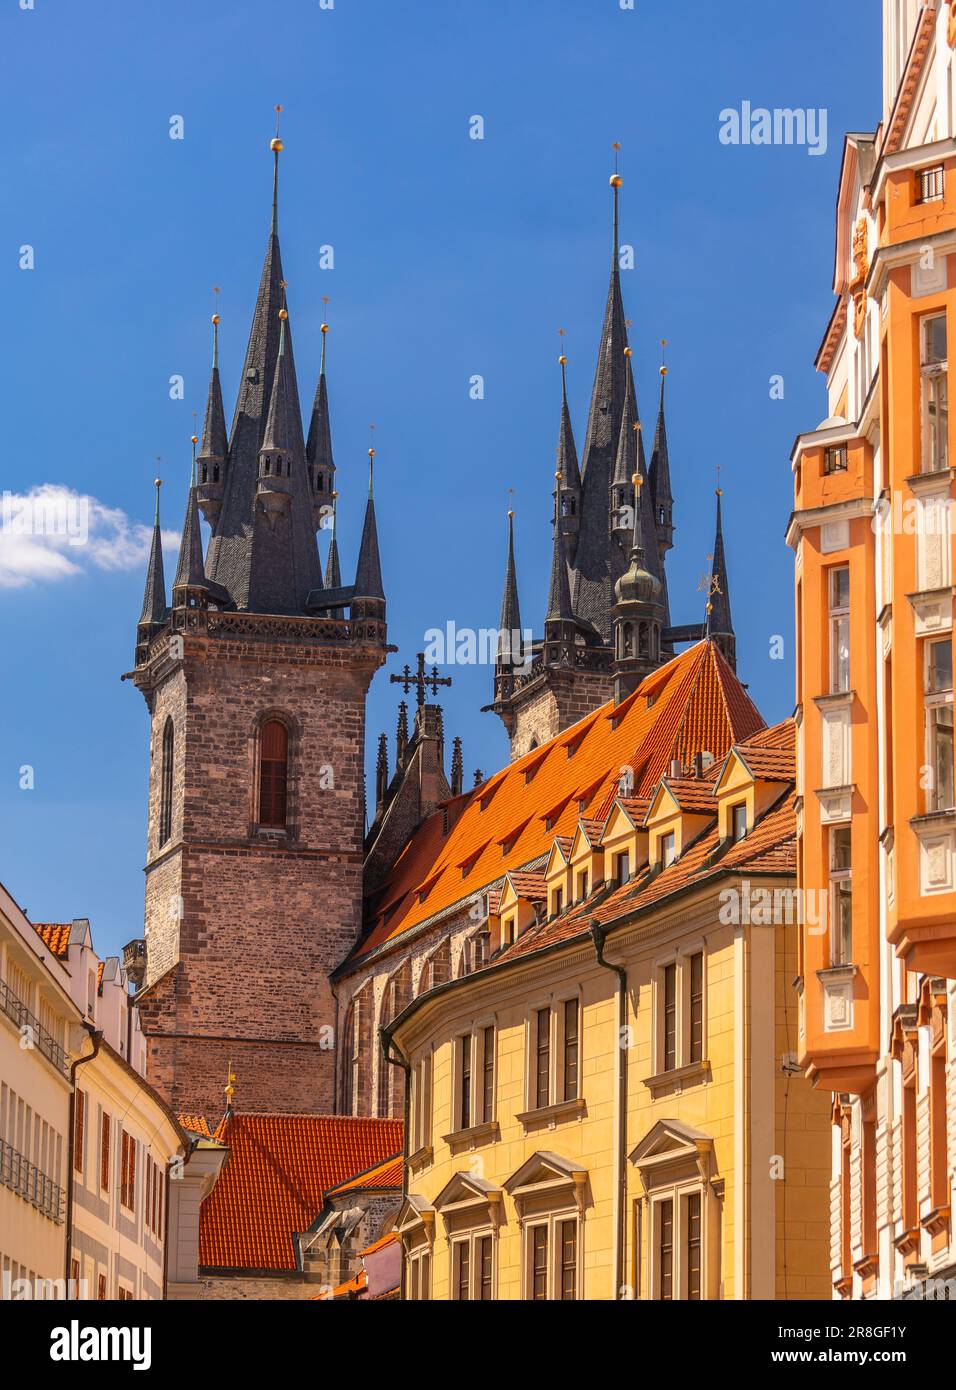 PRAGA, REPÚBLICA CHECA, EUROPA - Las torres de la Iglesia de Nuestra Señora antes de que Tyn se eleven por encima de otros edificios en Stare Mesto. Foto de stock